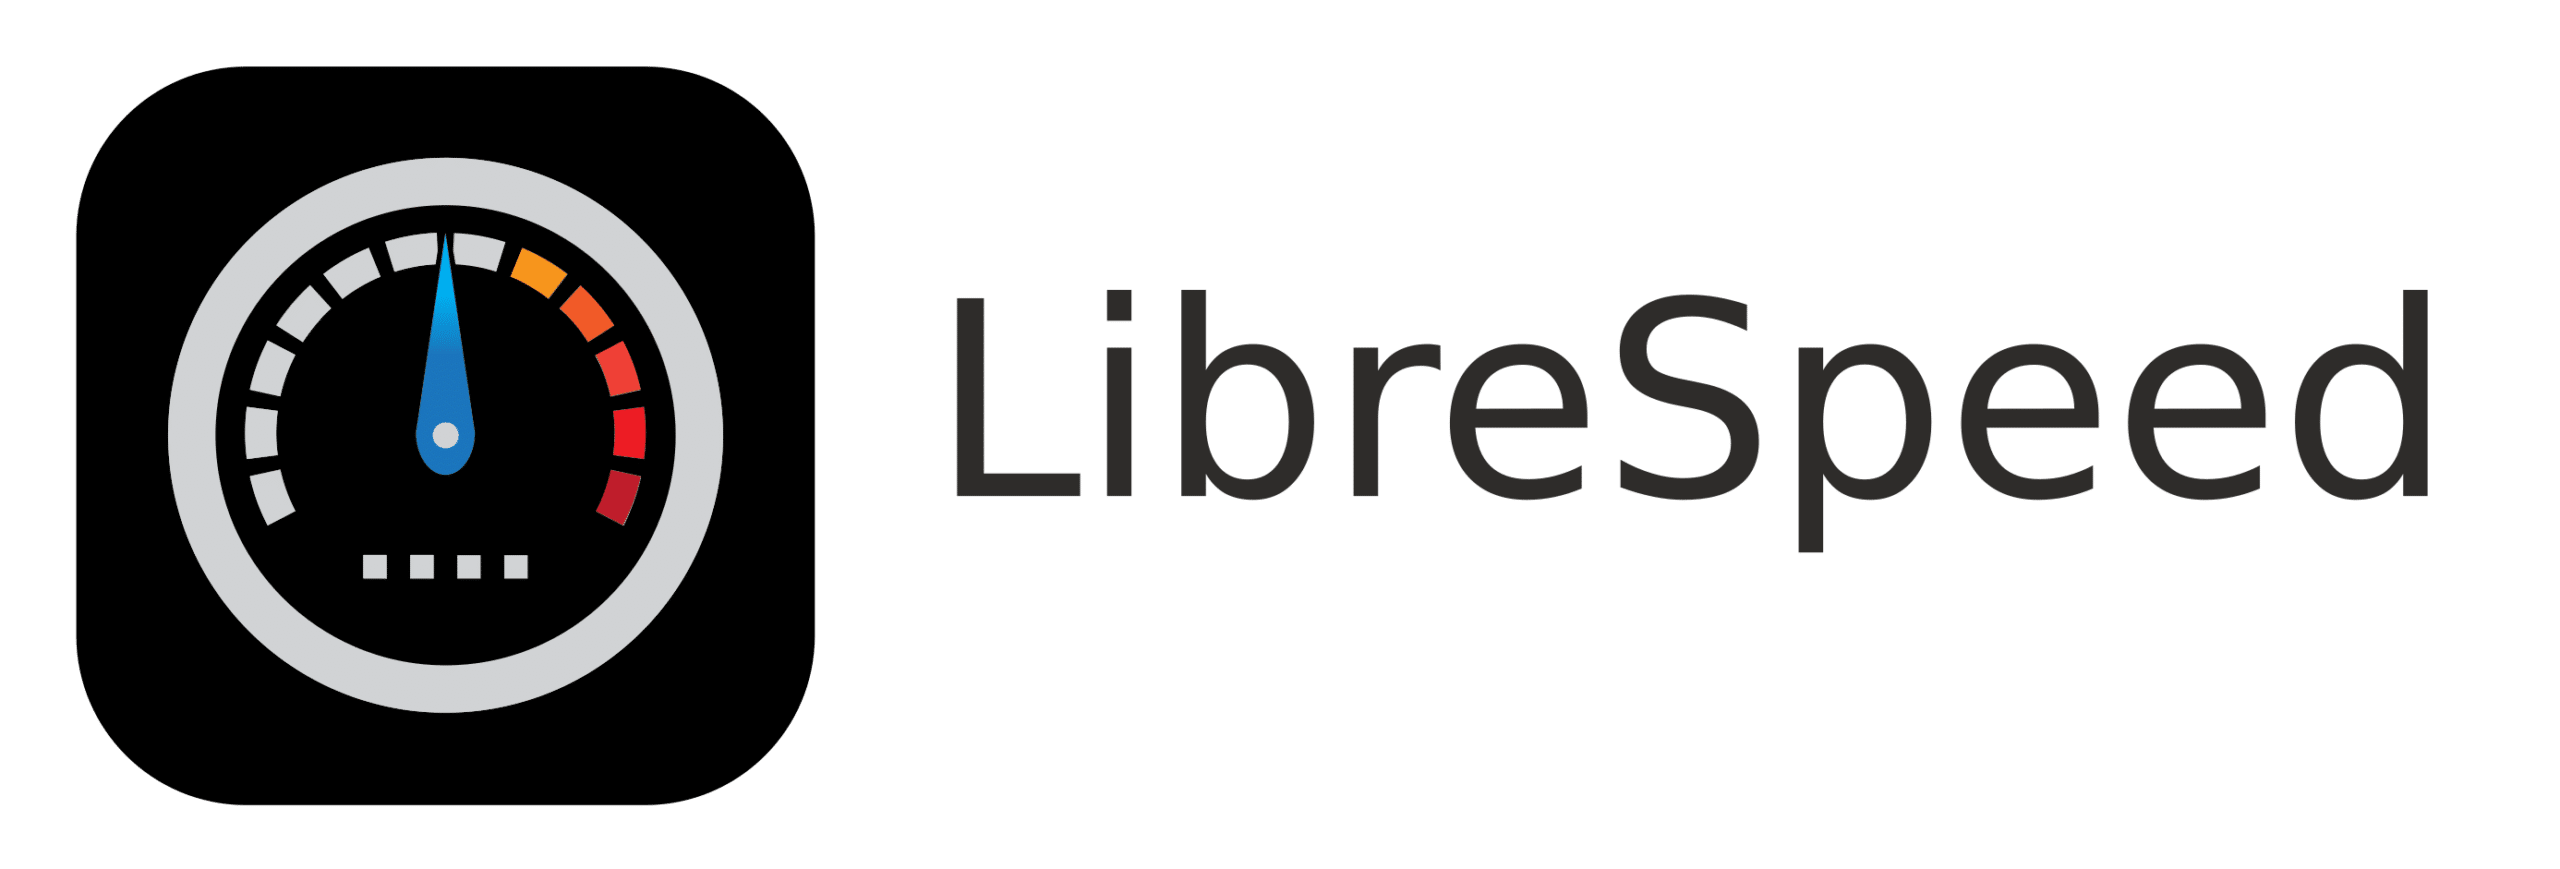 Librespeed logo